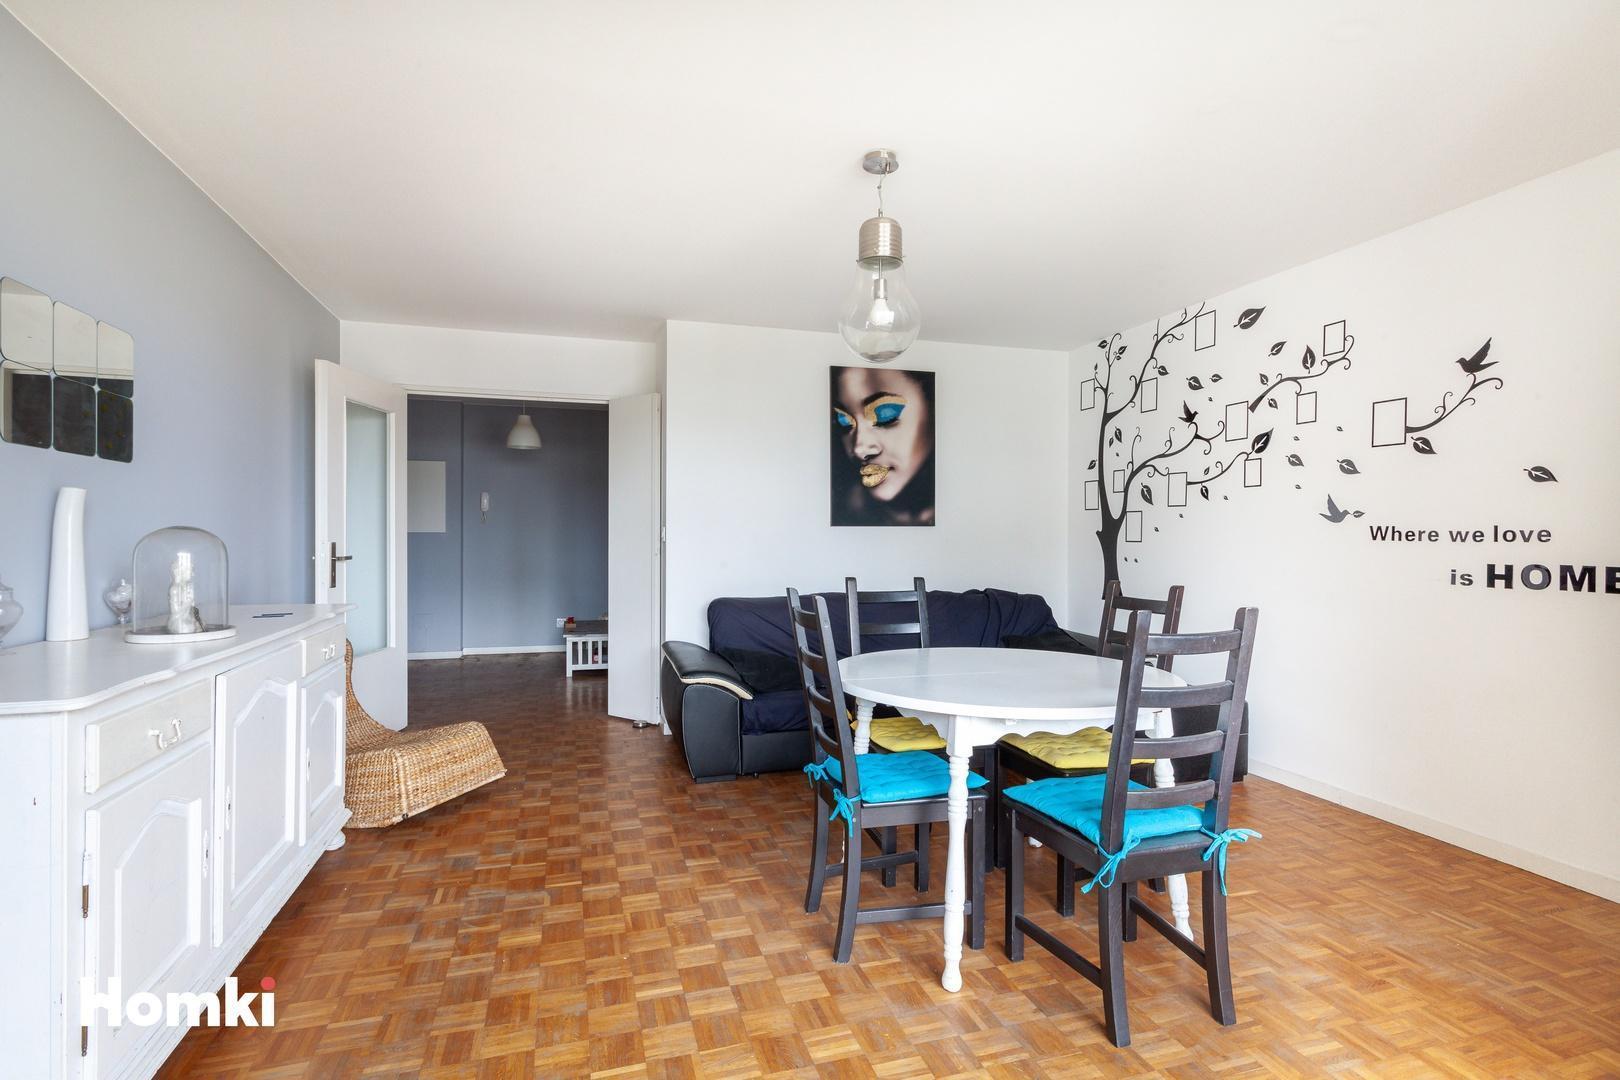 Homki - Vente Appartement  de 70.0 m² à Lyon 69007